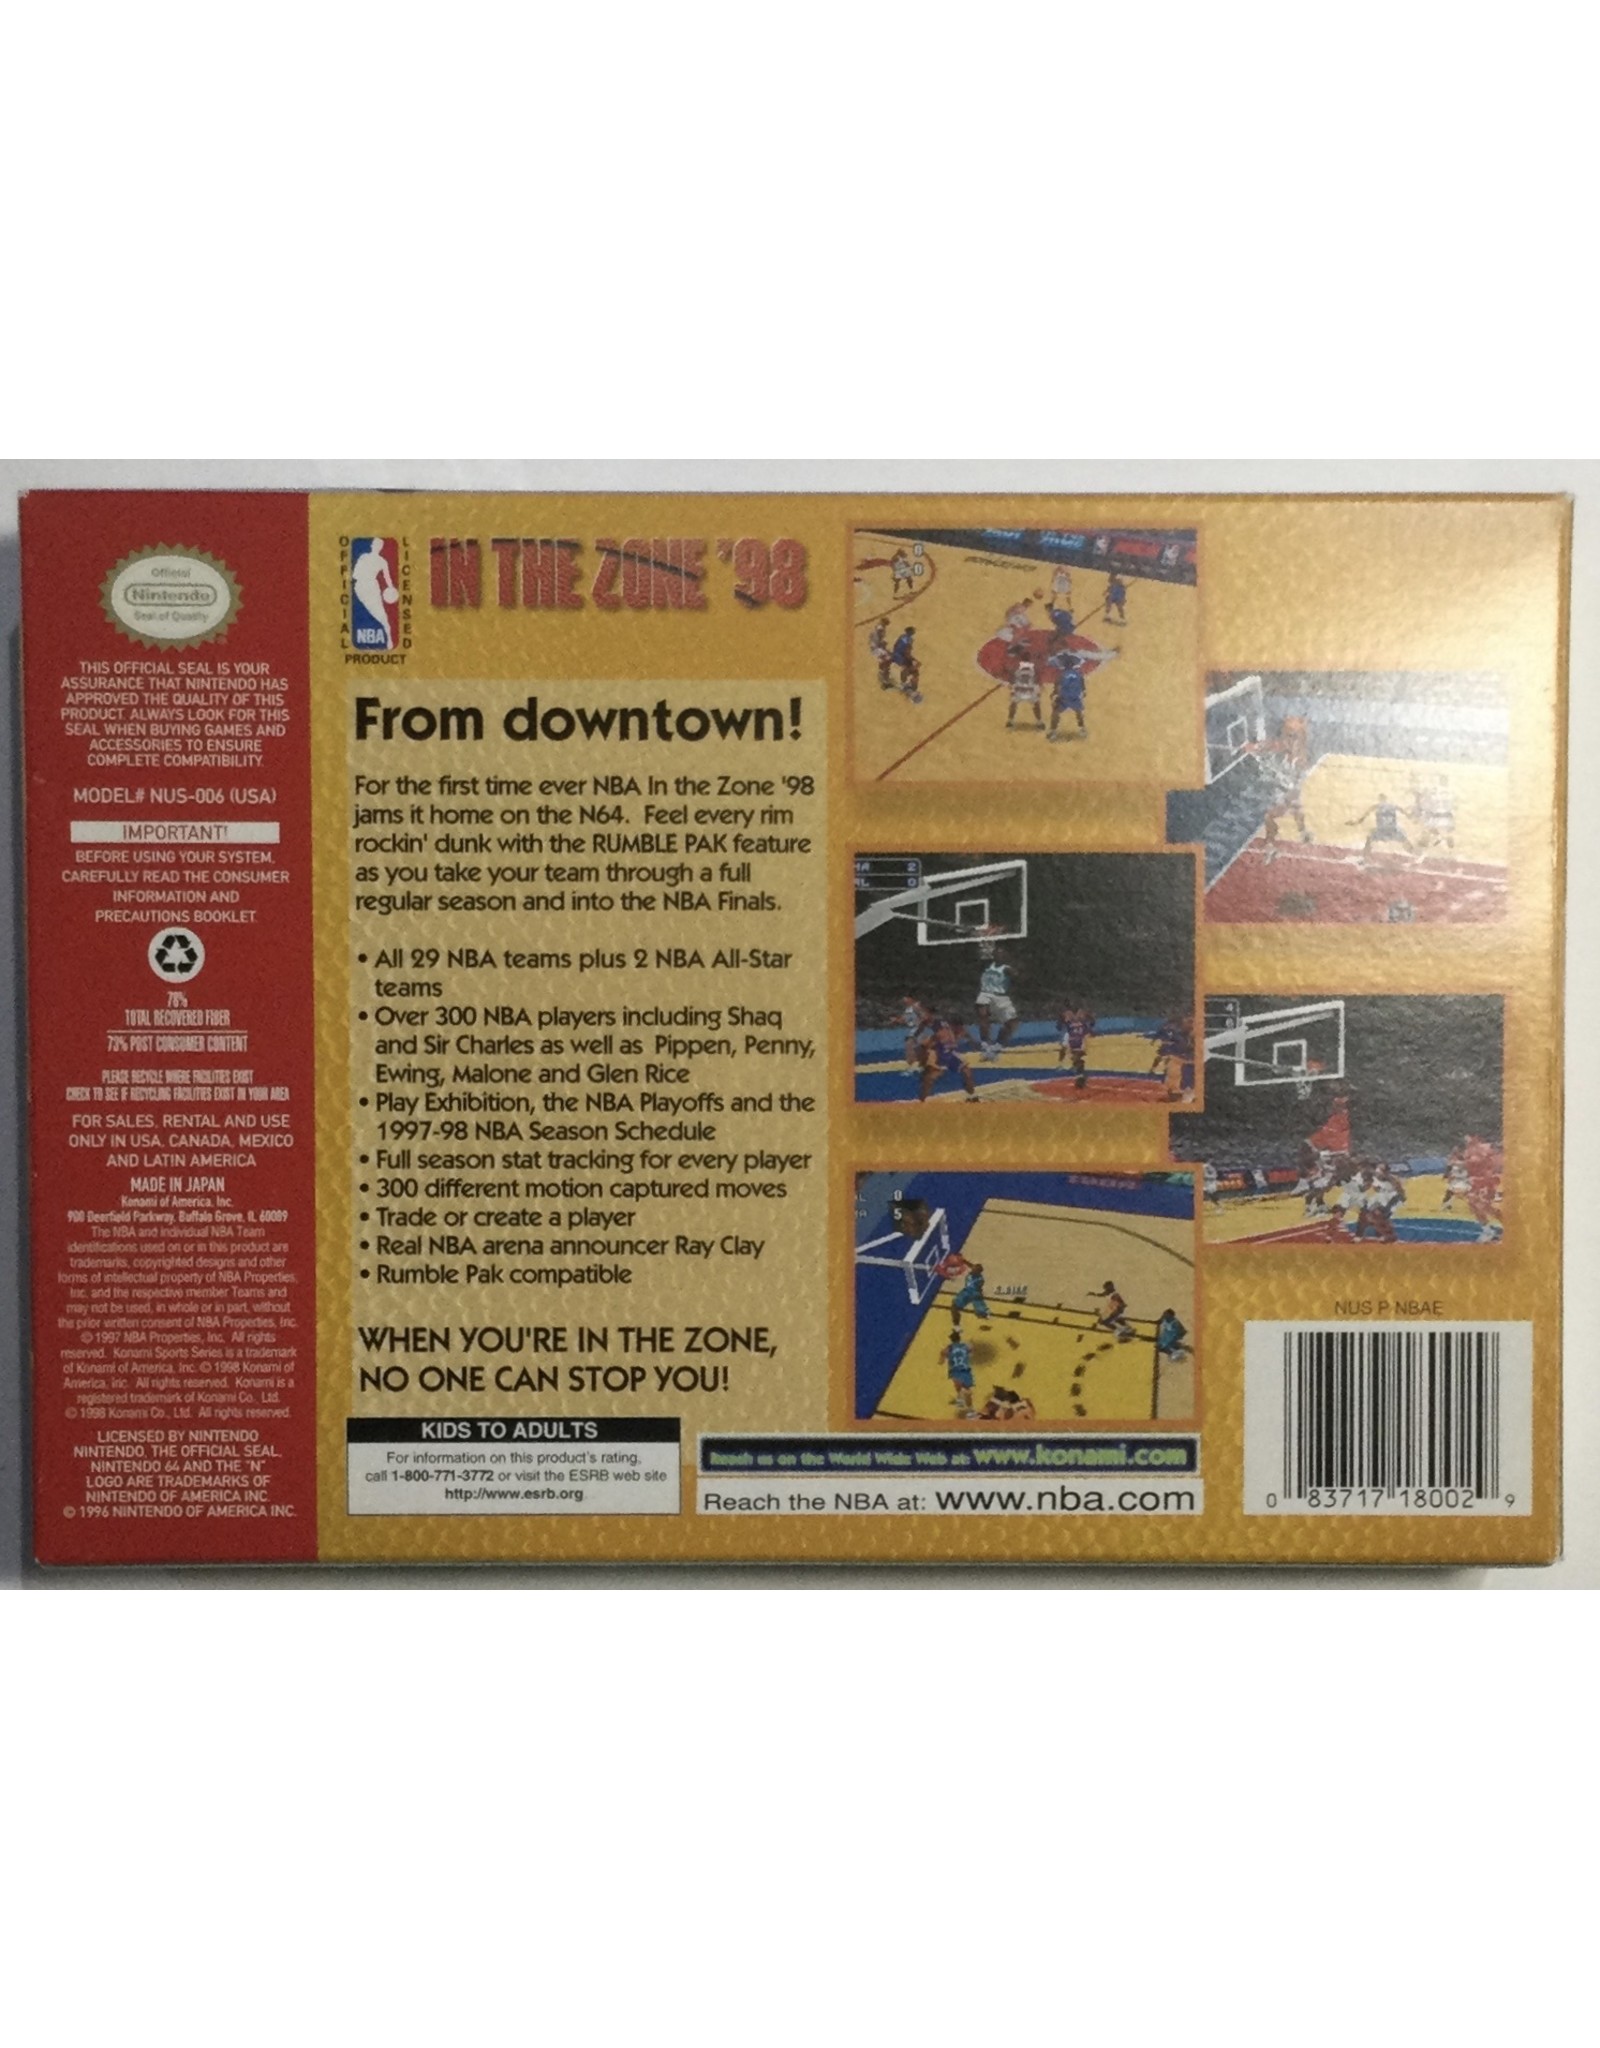 KONAMI In the Zone '98 for Nintendo 64 (N64) - CIB